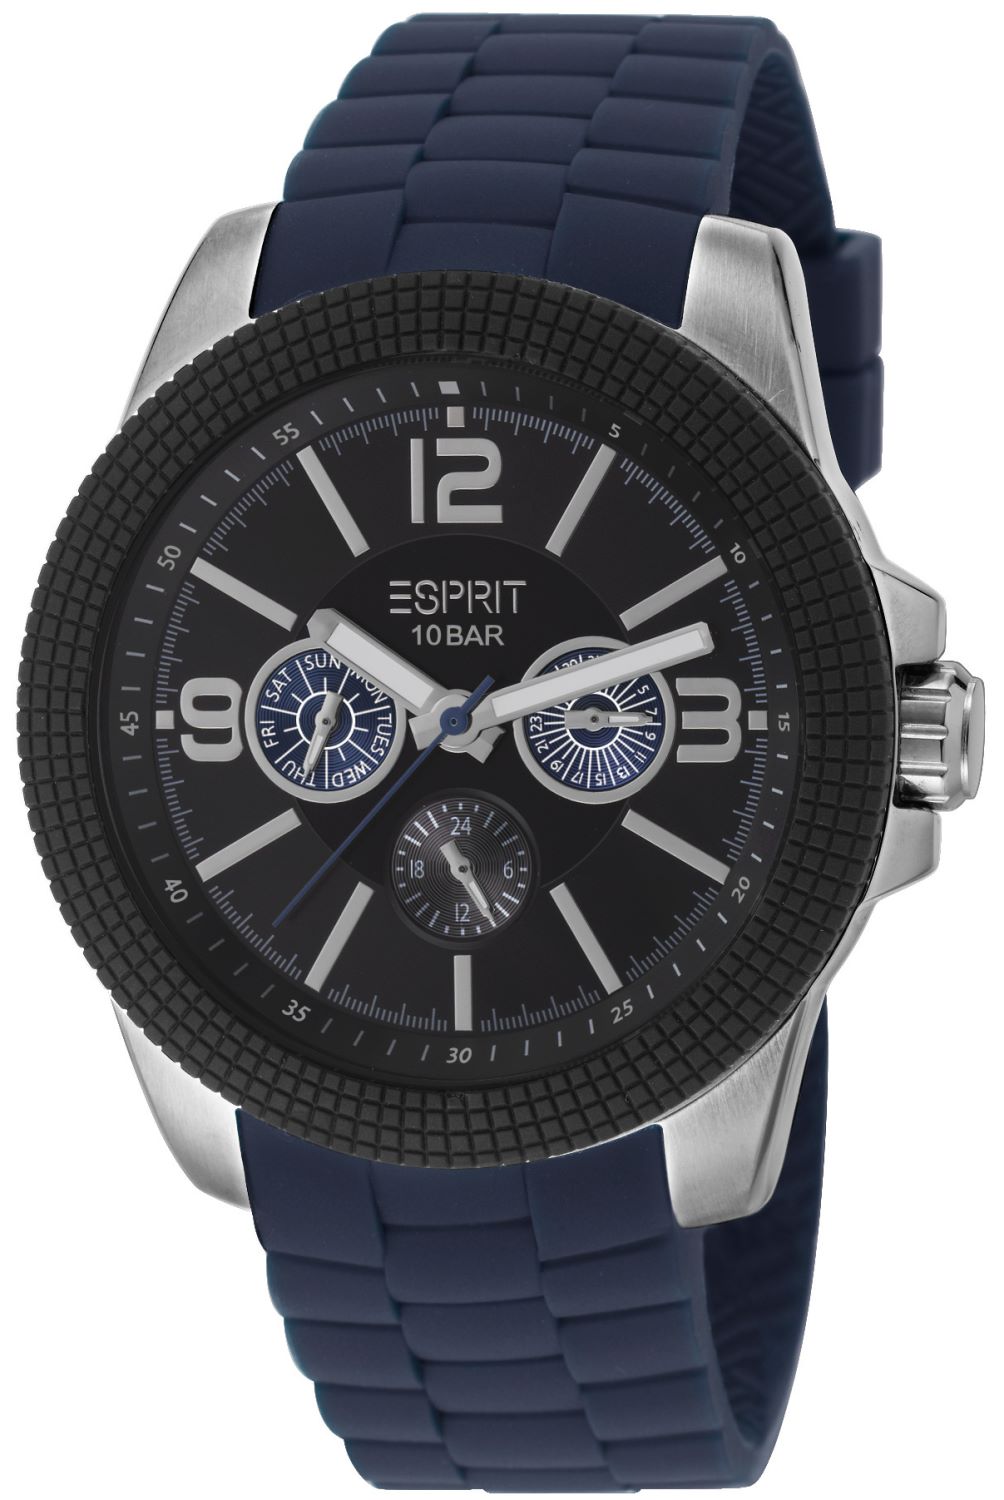 Armbanduhr für Herren - Esprit -clash blue- ES105831003